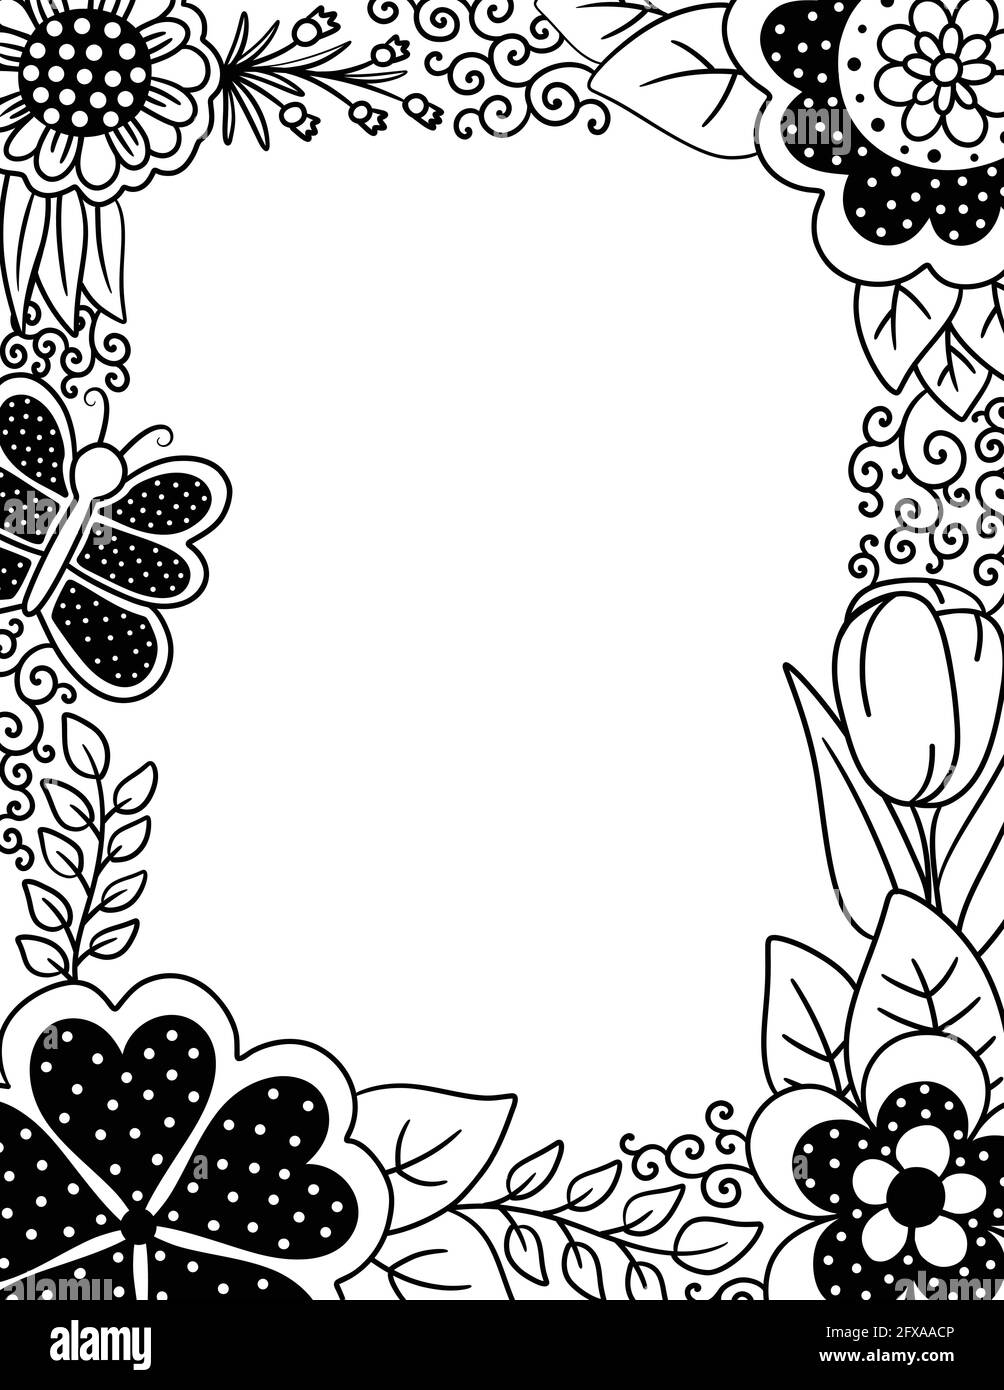 Malseite für Erwachsene mit Blumenrand von Polka Punkten und Schmetterlinge Stock Vektor